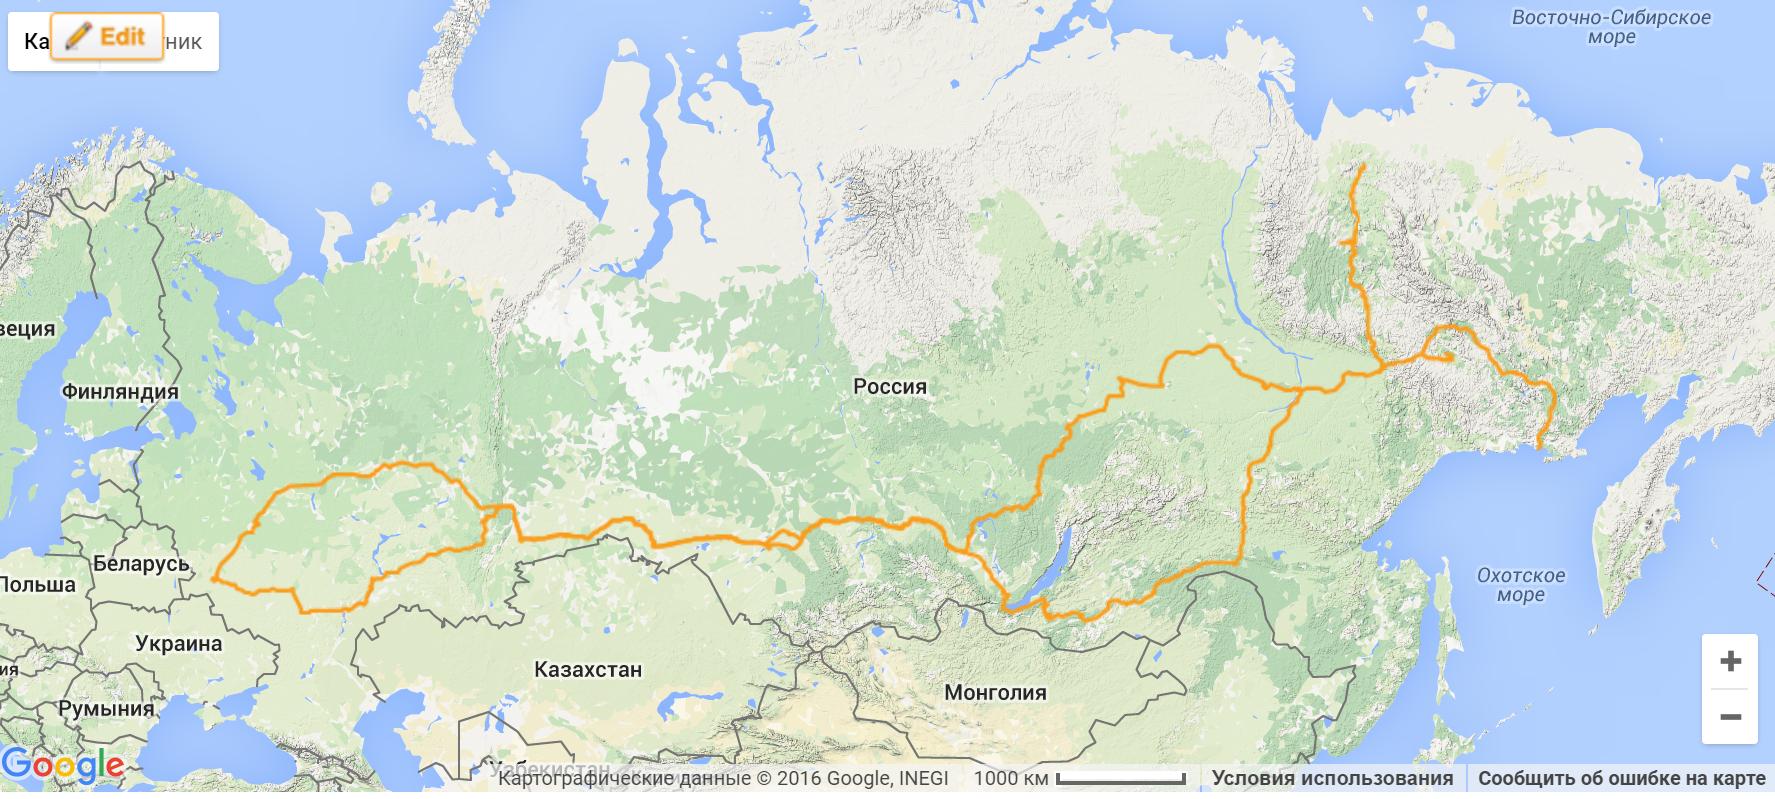 Где расположено озеро байкал на карте. Карта озеро Байкал на карте России. Озеро Байкал на карте России. Озеро Байкал на карте РФ.